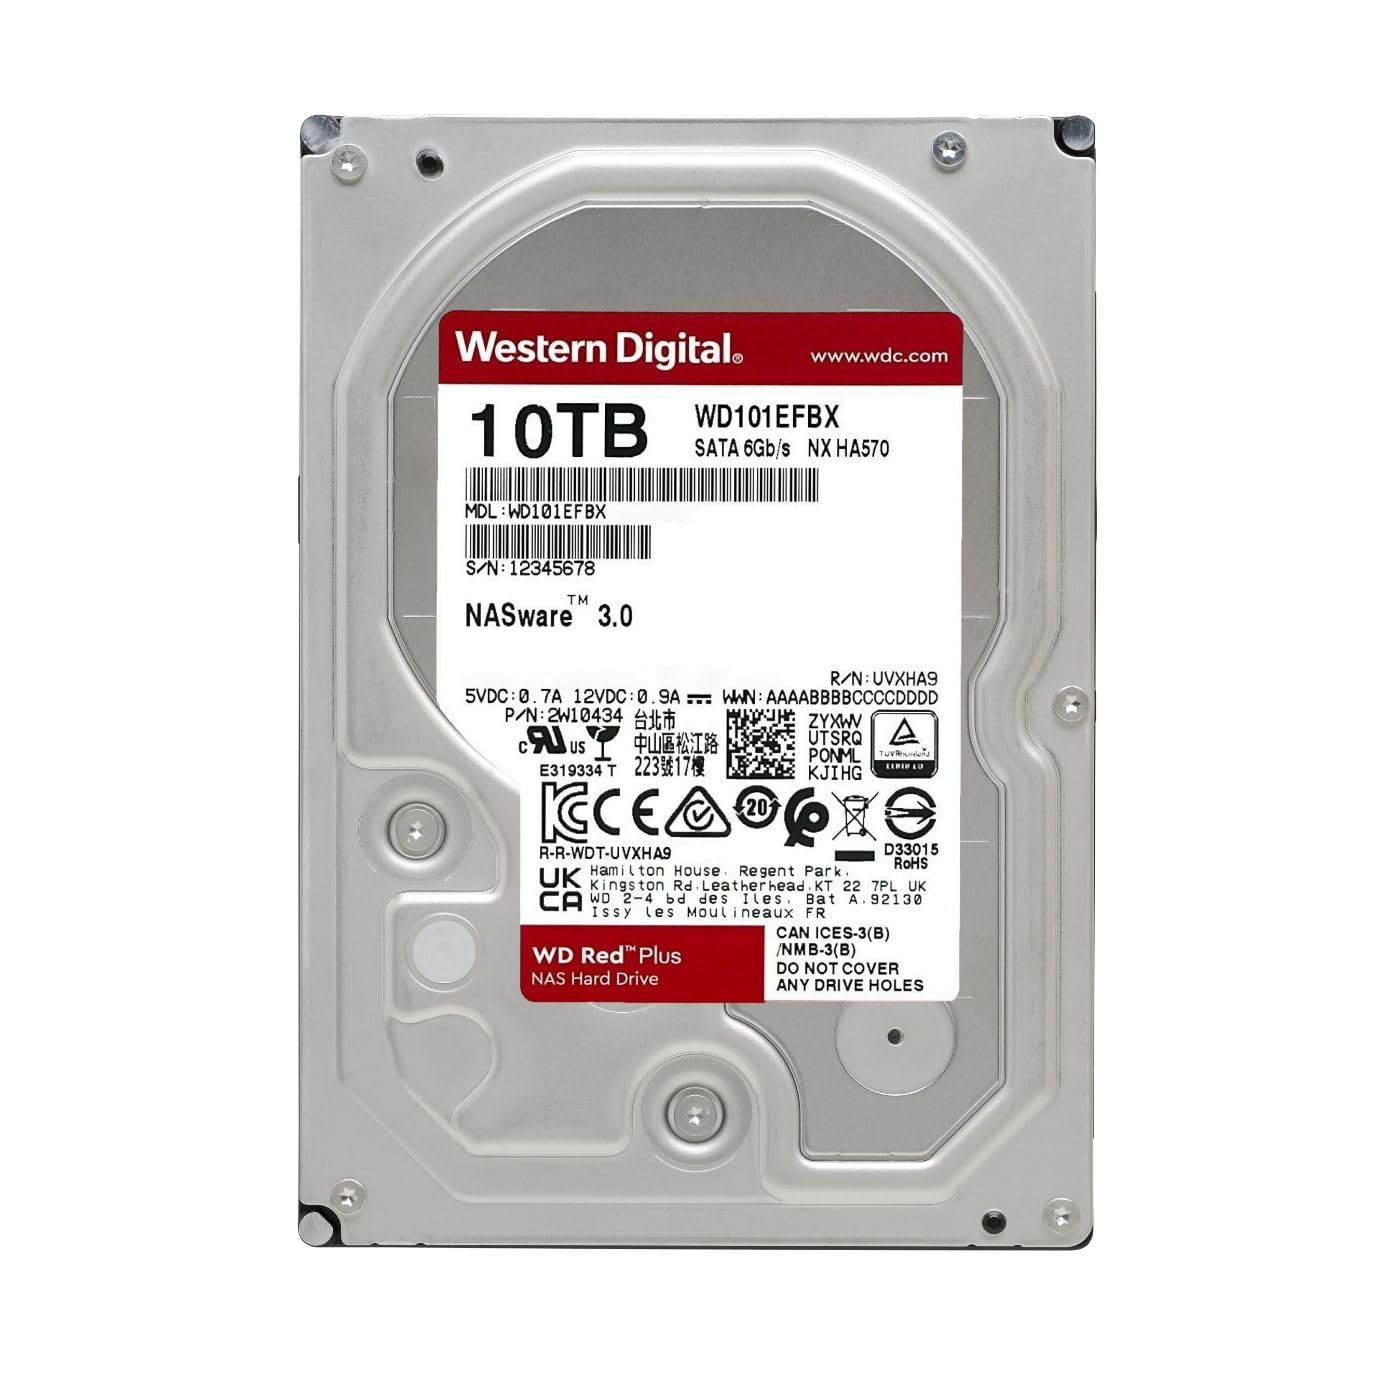 Western Digital 10TB WD Red Plus NAS Internal Hard Drive HDD - 7200 RPM, SATA 6 Gb/s, CMR, 256 MB Cache, 3.5